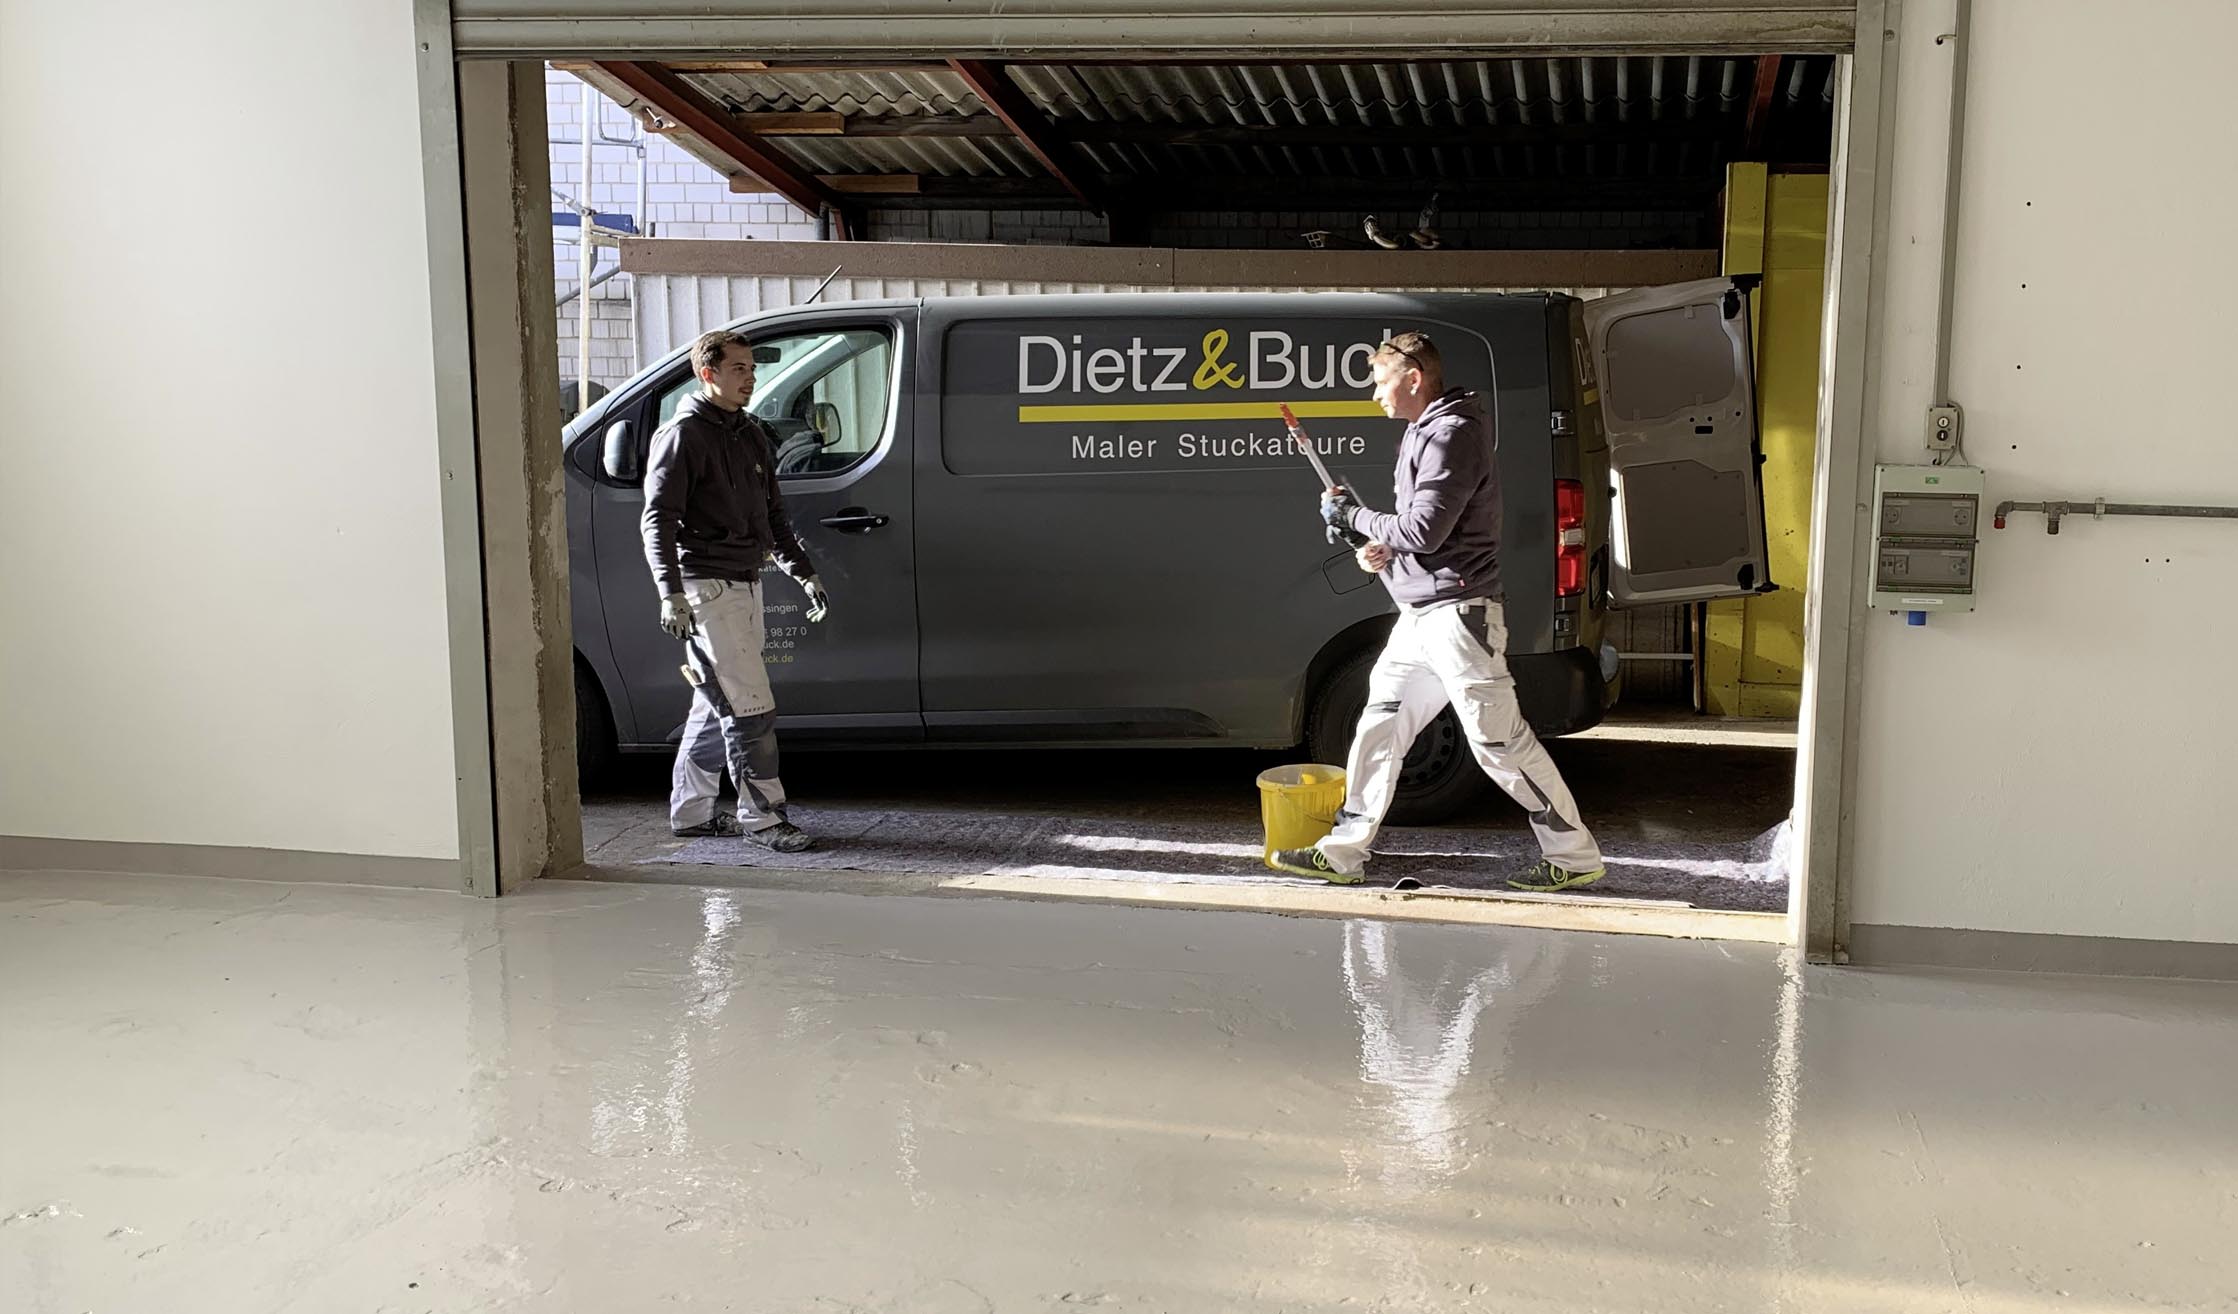 Foto von Malern von Dietz und Buck, die auf einer Baustelle vor dem Firmenwagen laufen